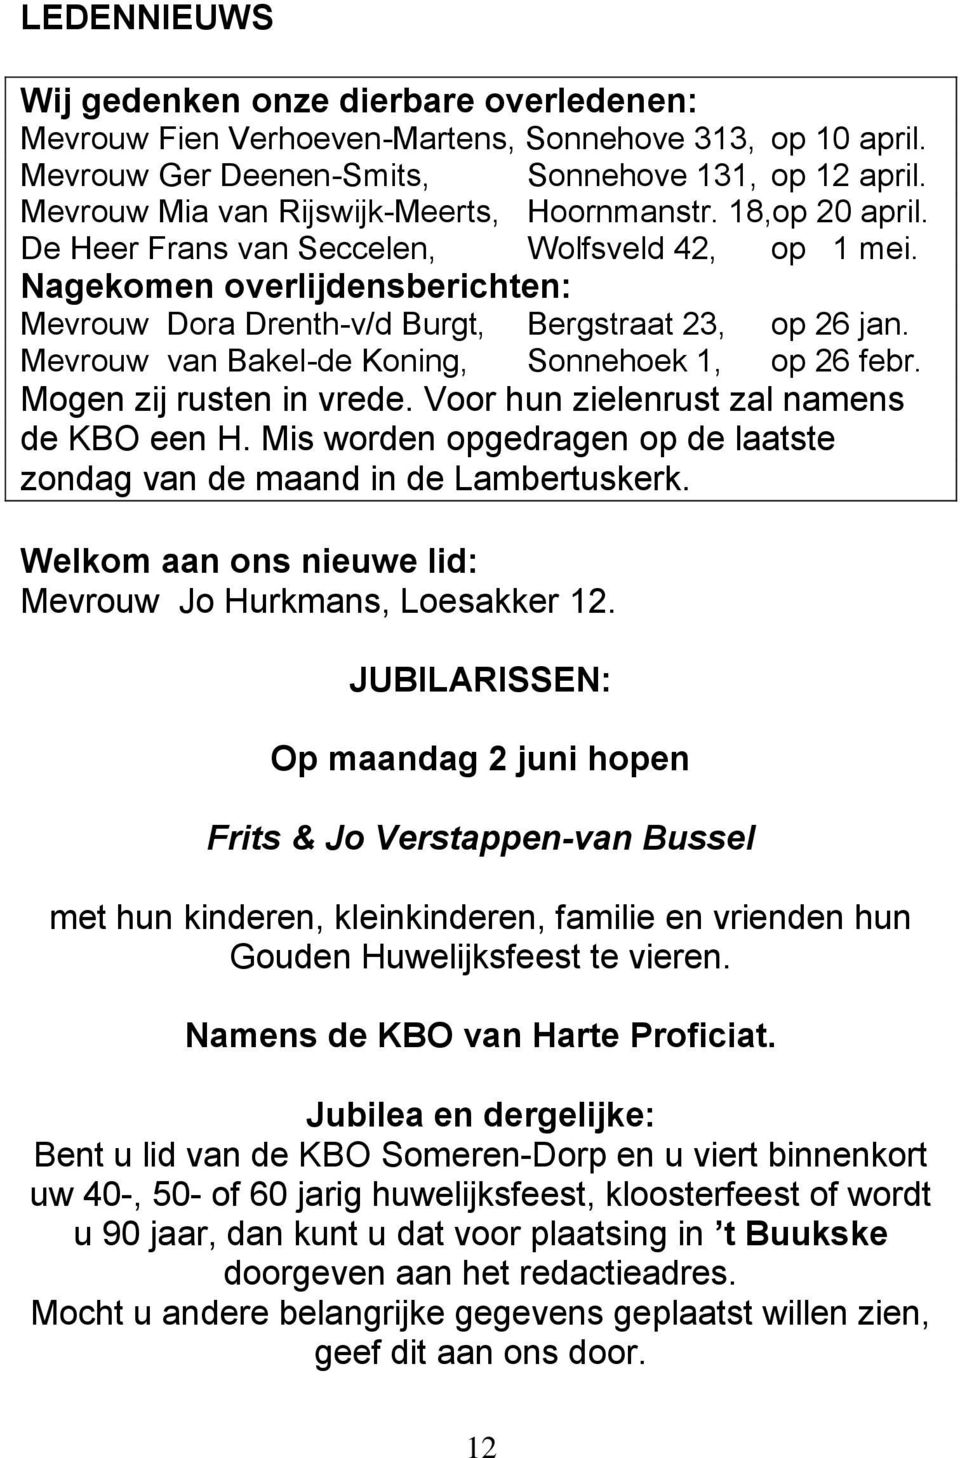 Nagekomen overlijdensberichten: Mevrouw Dora Drenth-v/d Burgt, Bergstraat 23, op 26 jan. Mevrouw van Bakel-de Koning, Sonnehoek 1, op 26 febr. Mogen zij rusten in vrede.